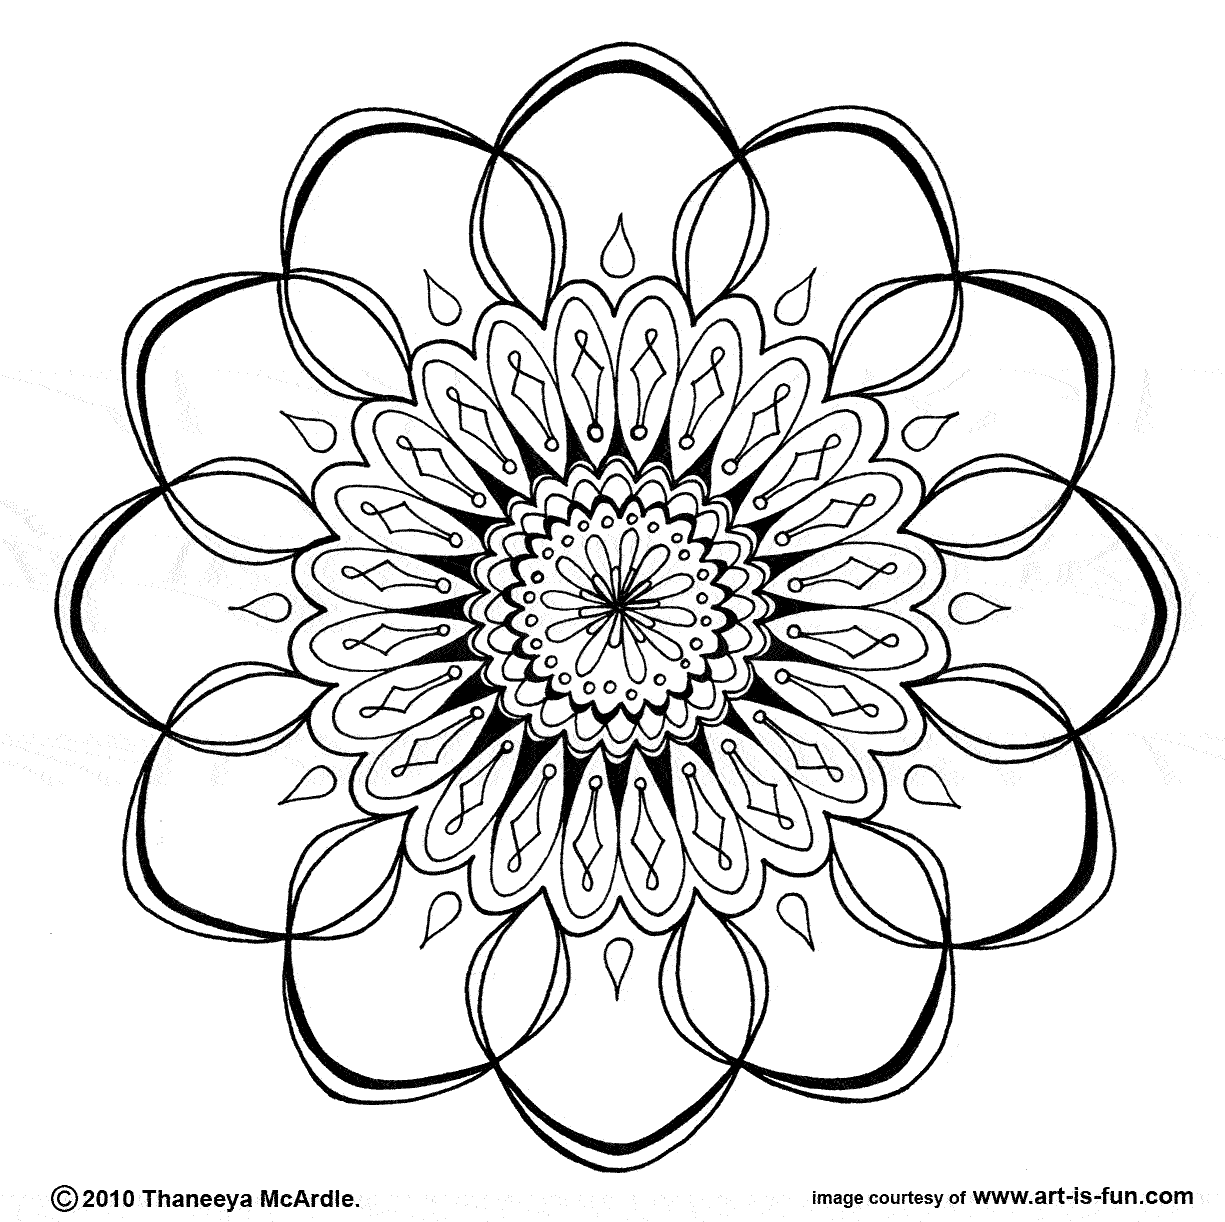 Image #21570 - Coloriage mandalas fleurs gratuit